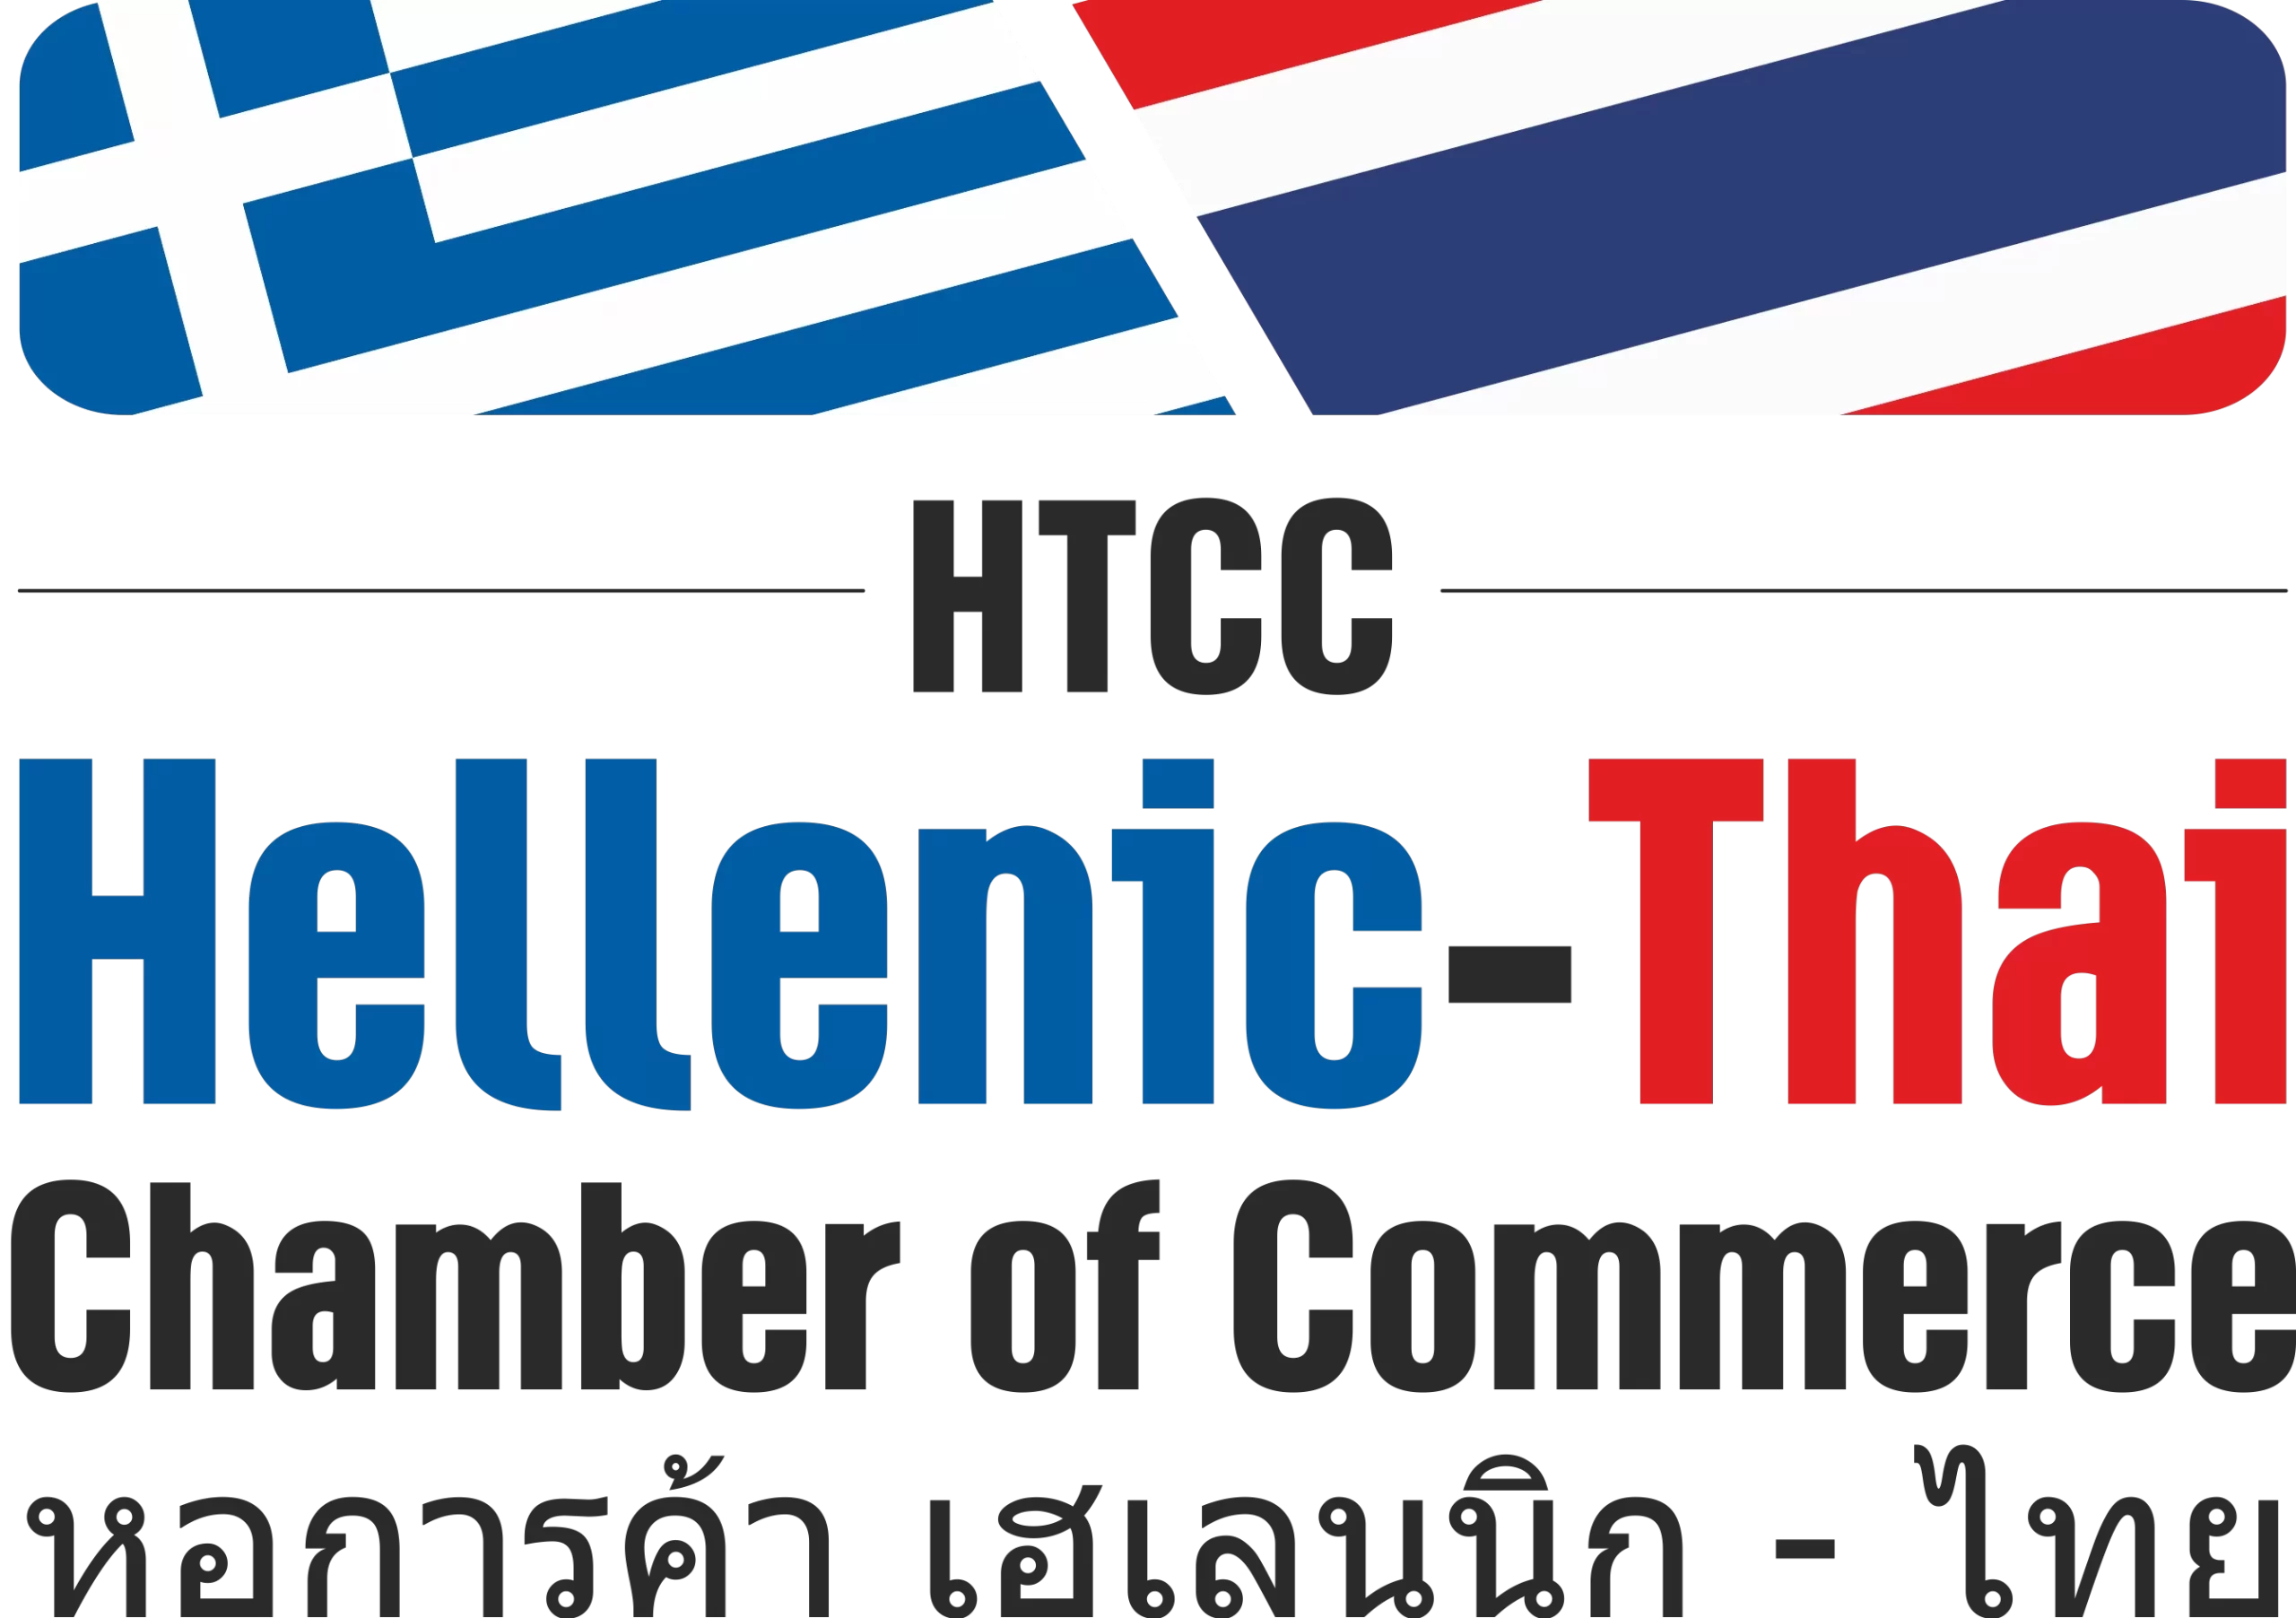 Hellenic-Thai Chamber of Commerce